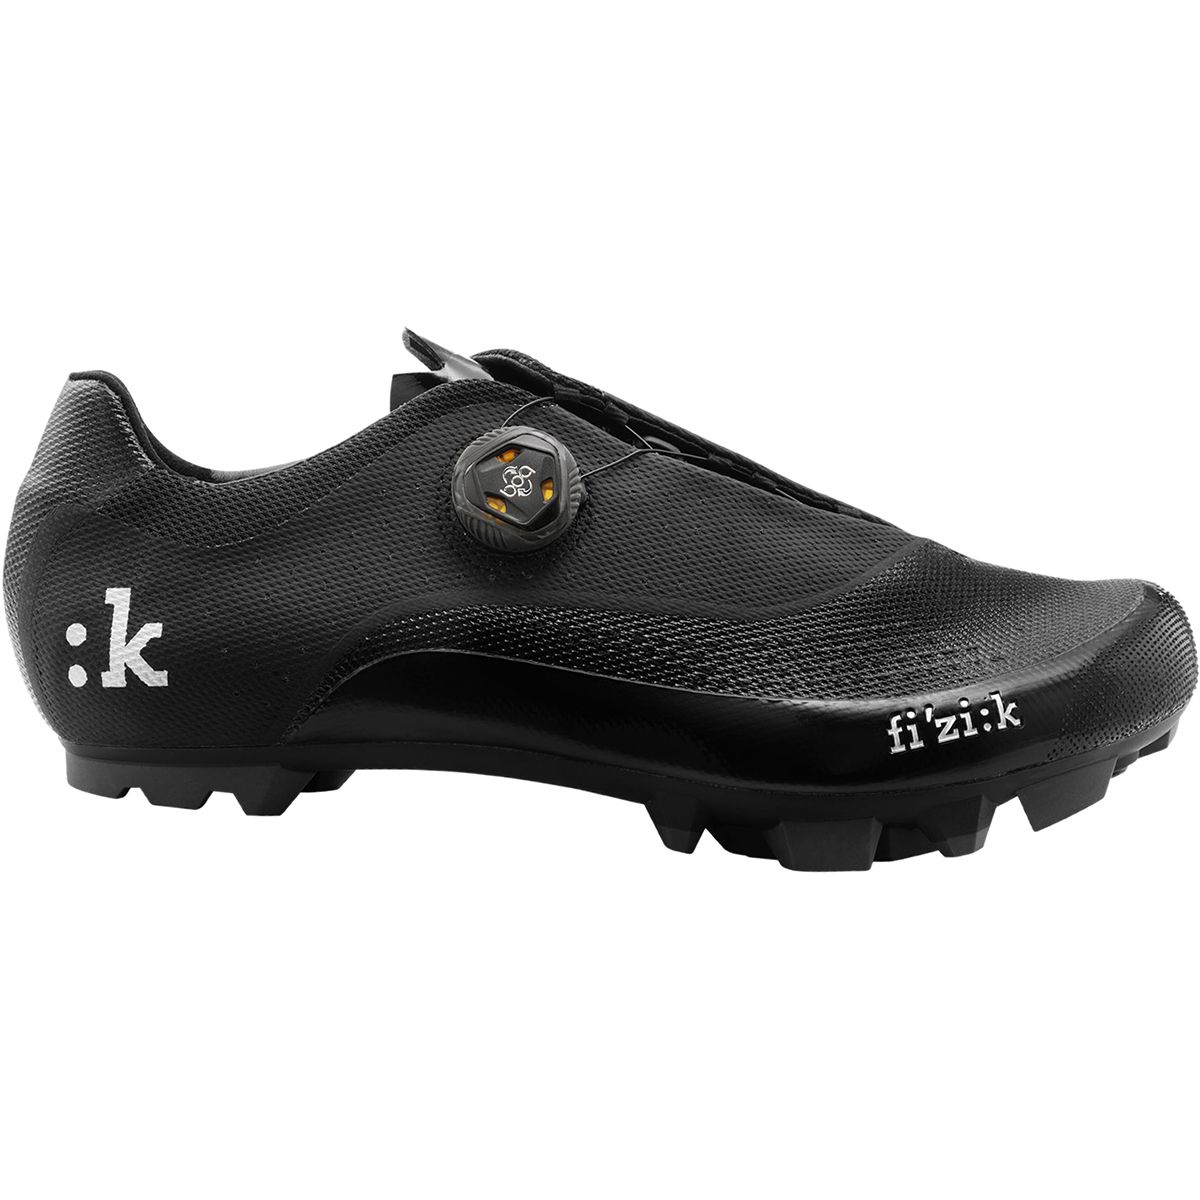 Fi'zi:k M3B Uomo Boa Cycling Shoe - Men's